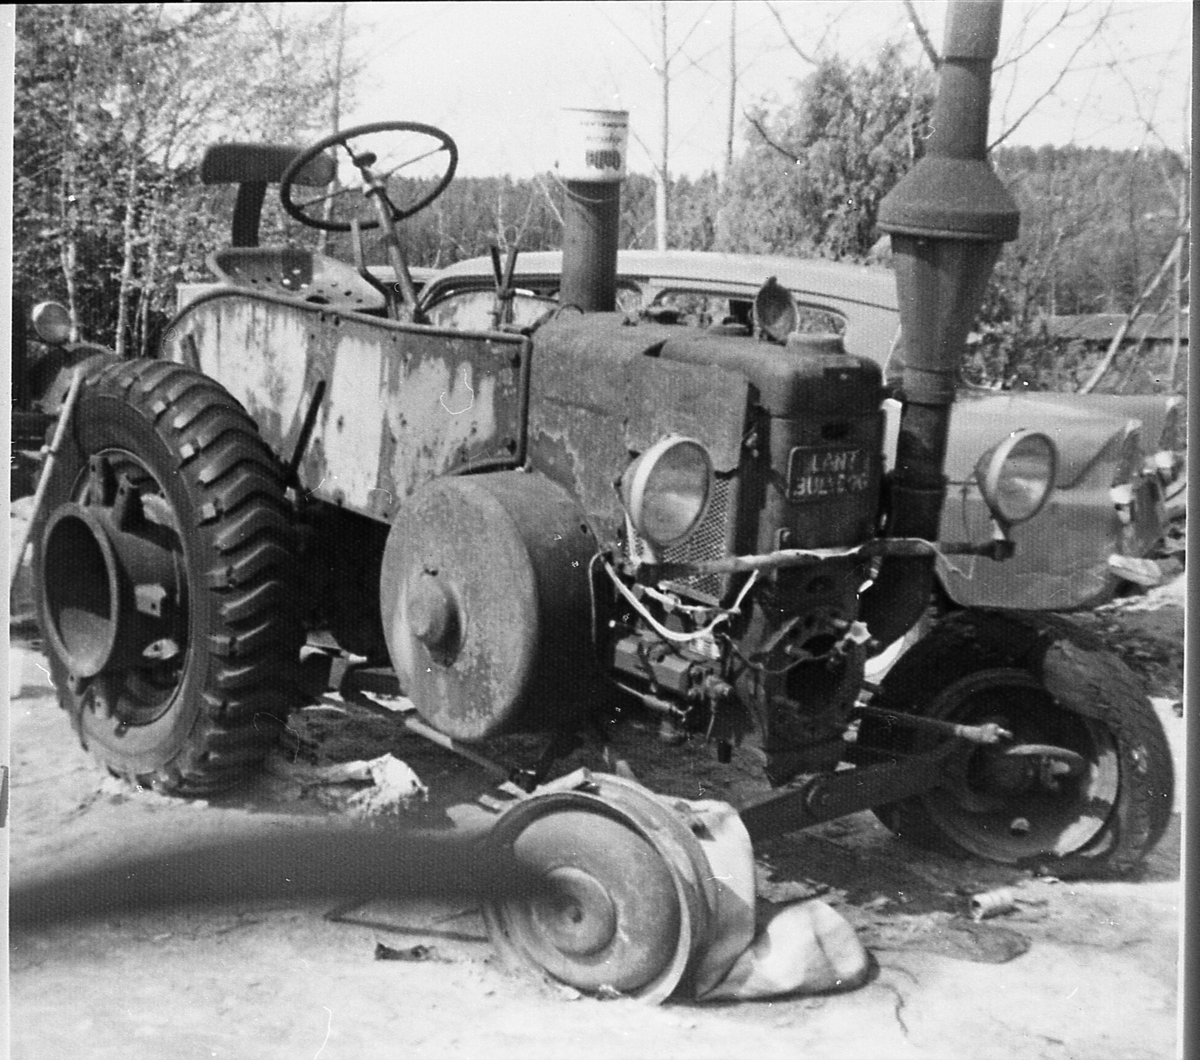 Traktor på Eidal, en 1939-modell Lanz. Blei brukt til knott-produksjon under krigen.